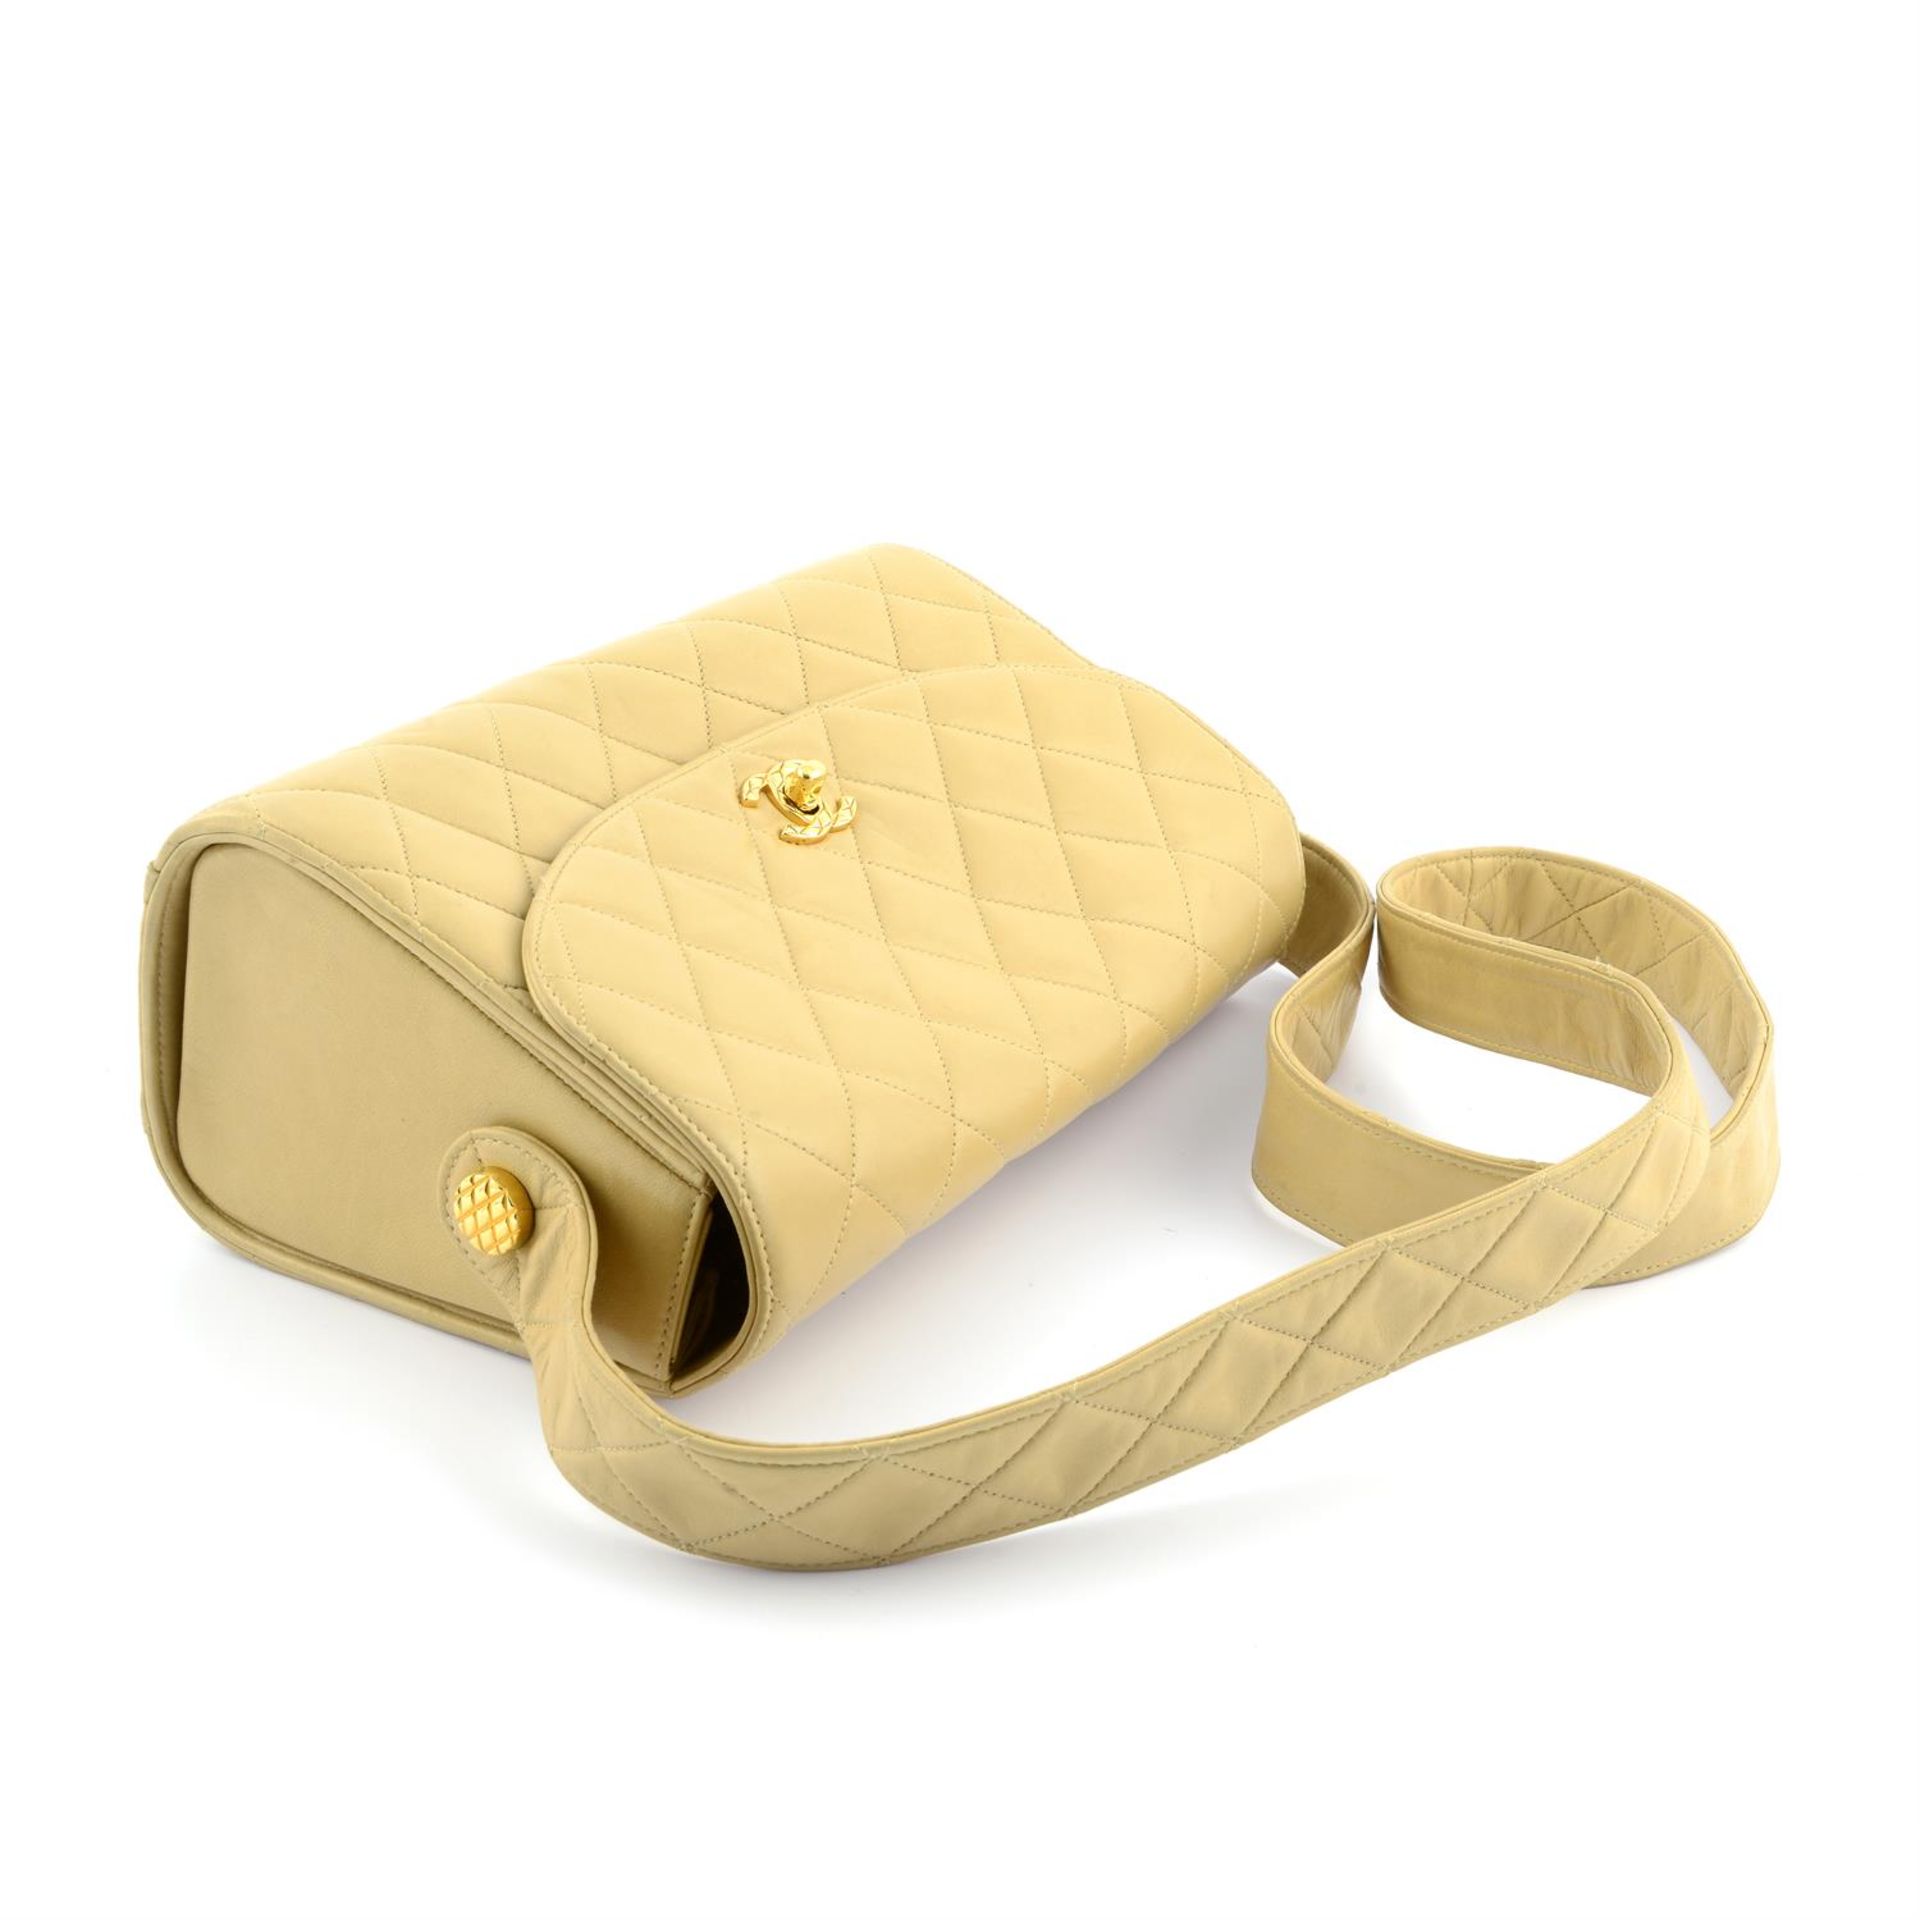 CHANEL - a beige lambskin leather handbag. - Bild 3 aus 4